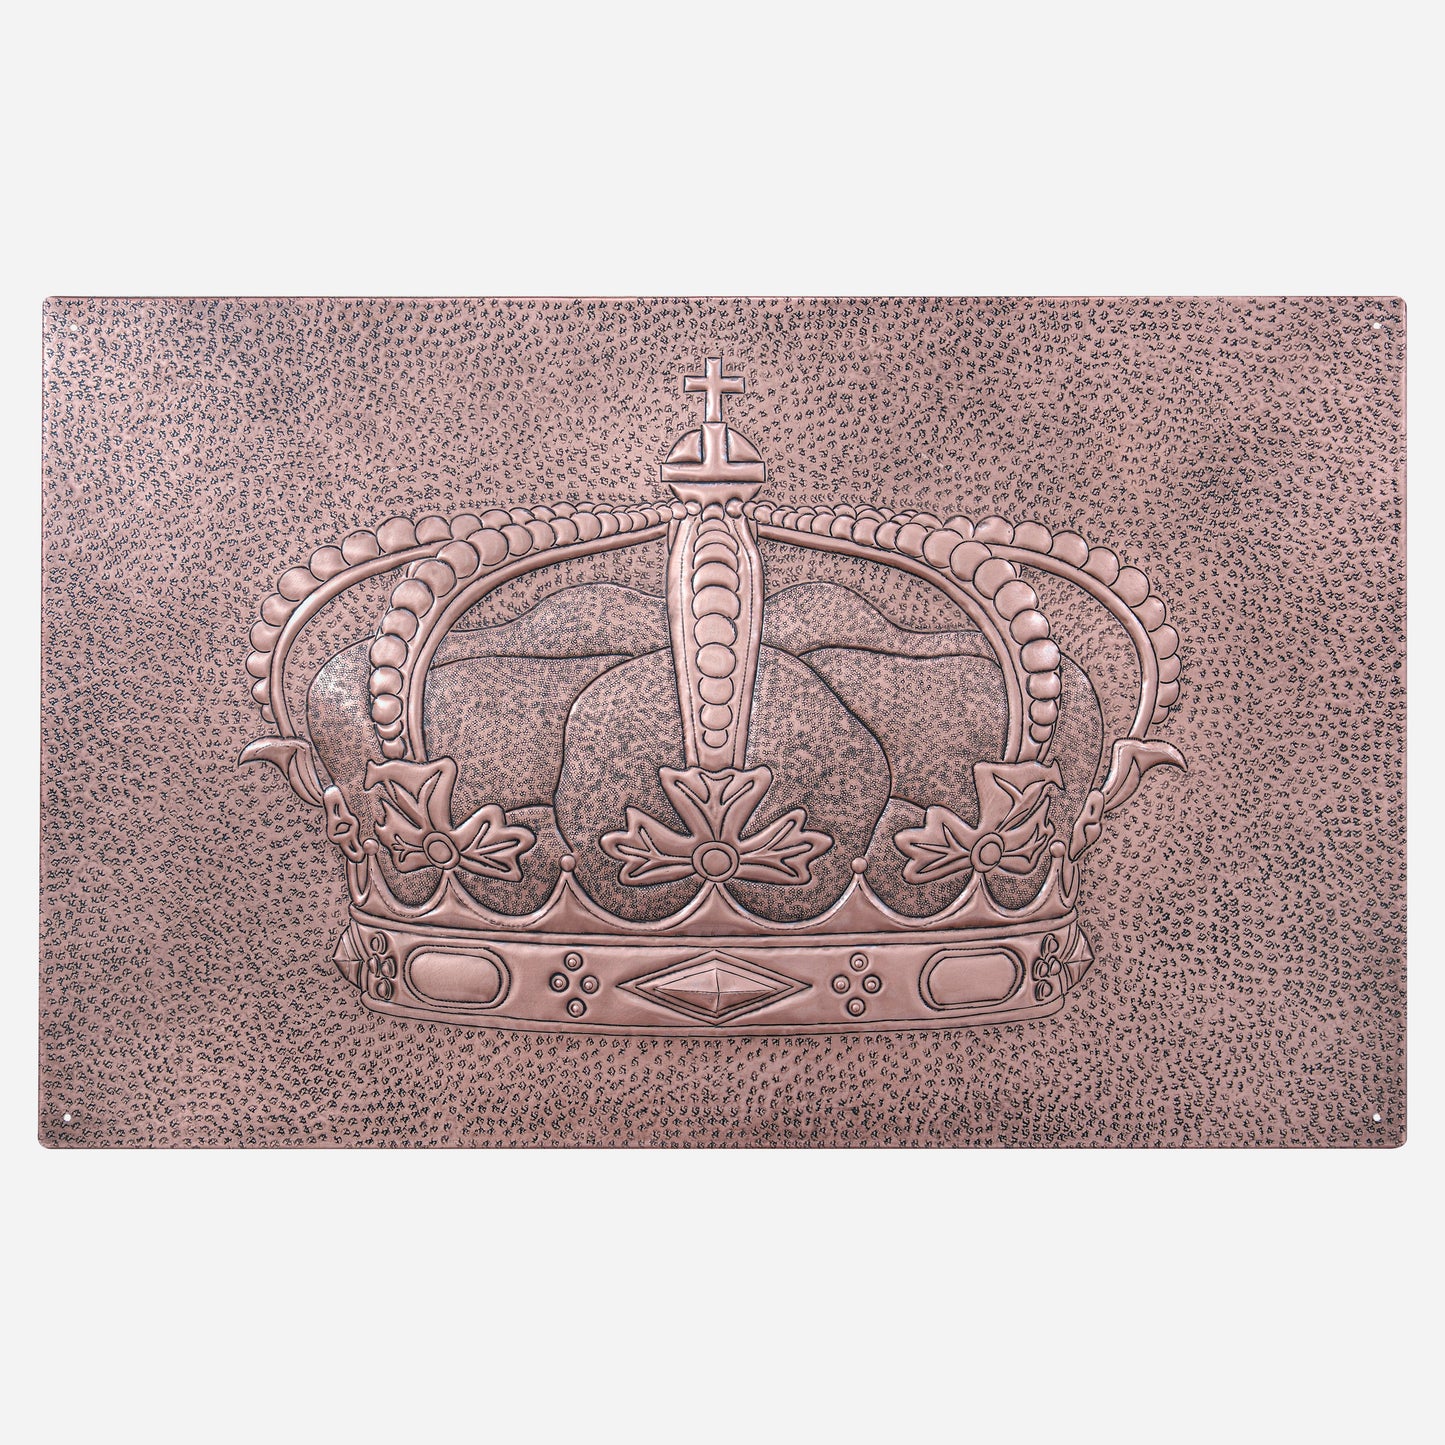 Royal Crest Copper Backsplash Tile